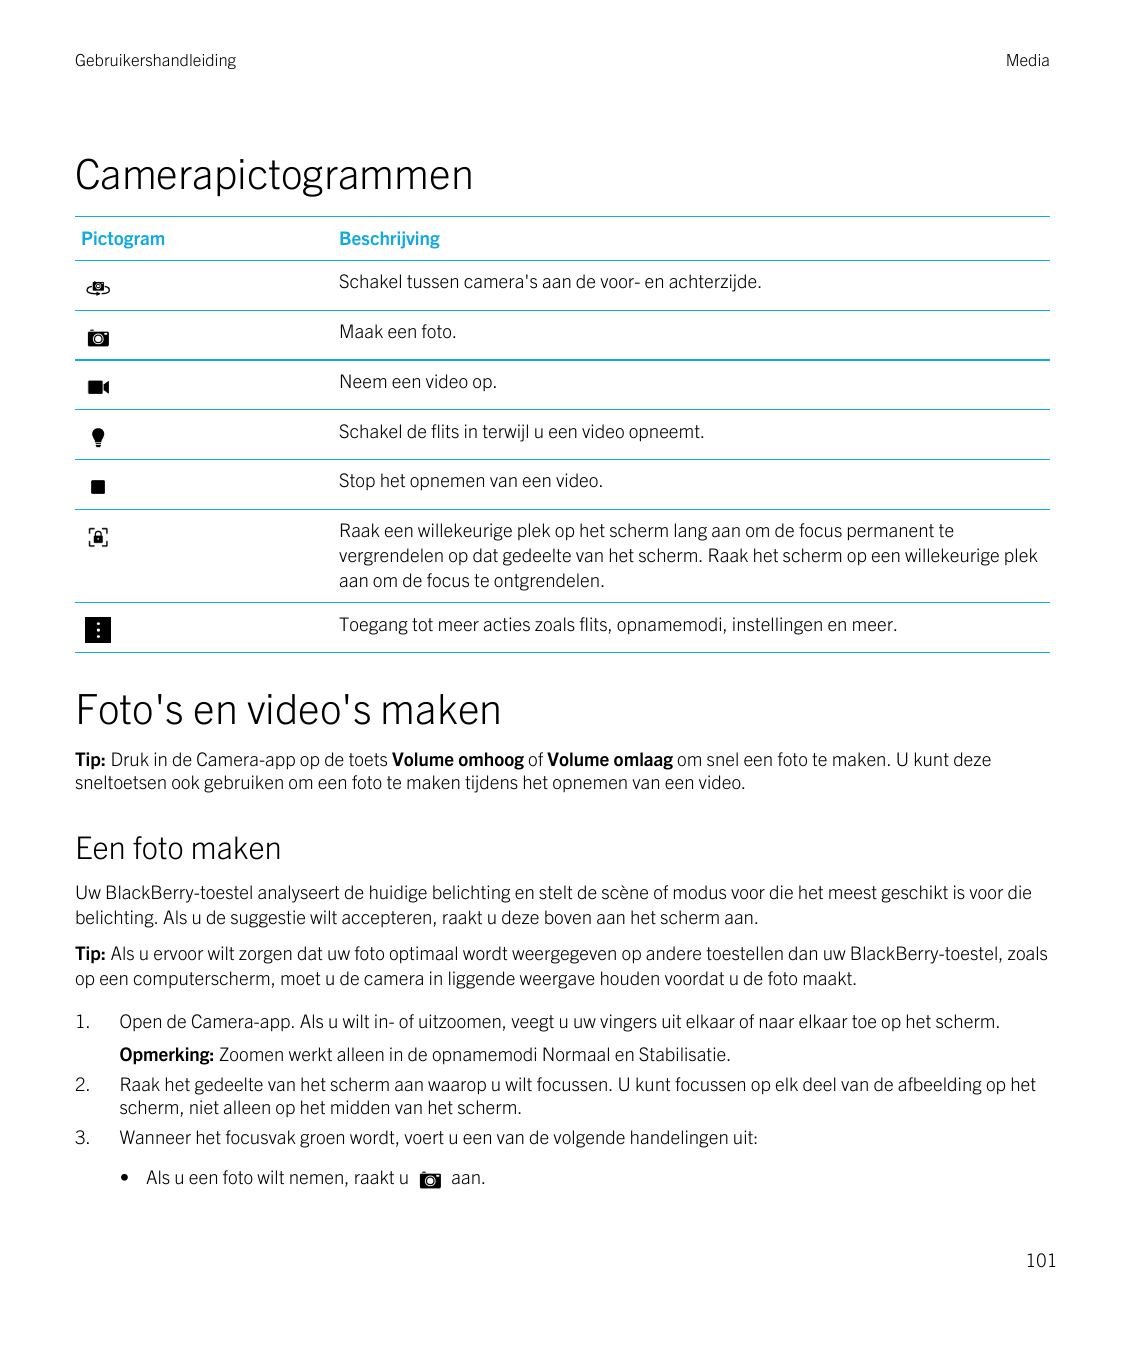 GebruikershandleidingMediaCamerapictogrammenPictogramBeschrijvingSchakel tussen camera's aan de voor- en achterzijde.Maak een fo